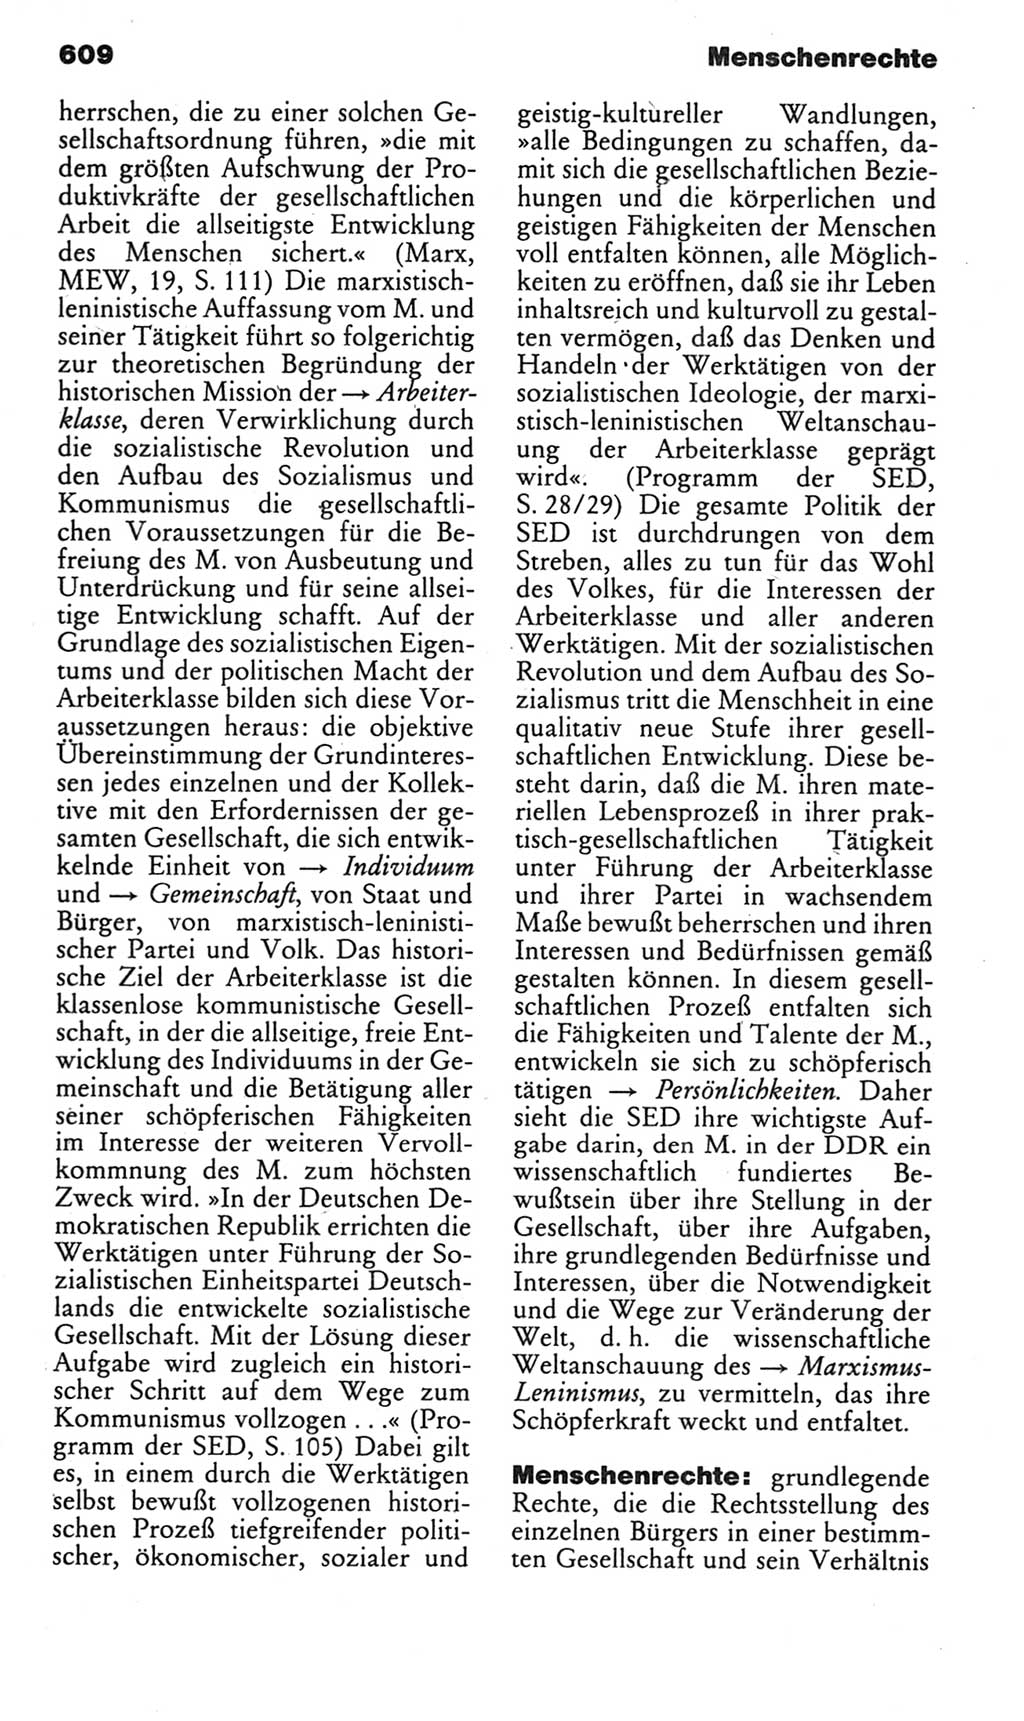 Kleines politisches Wörterbuch [Deutsche Demokratische Republik (DDR)] 1985, Seite 609 (Kl. pol. Wb. DDR 1985, S. 609)